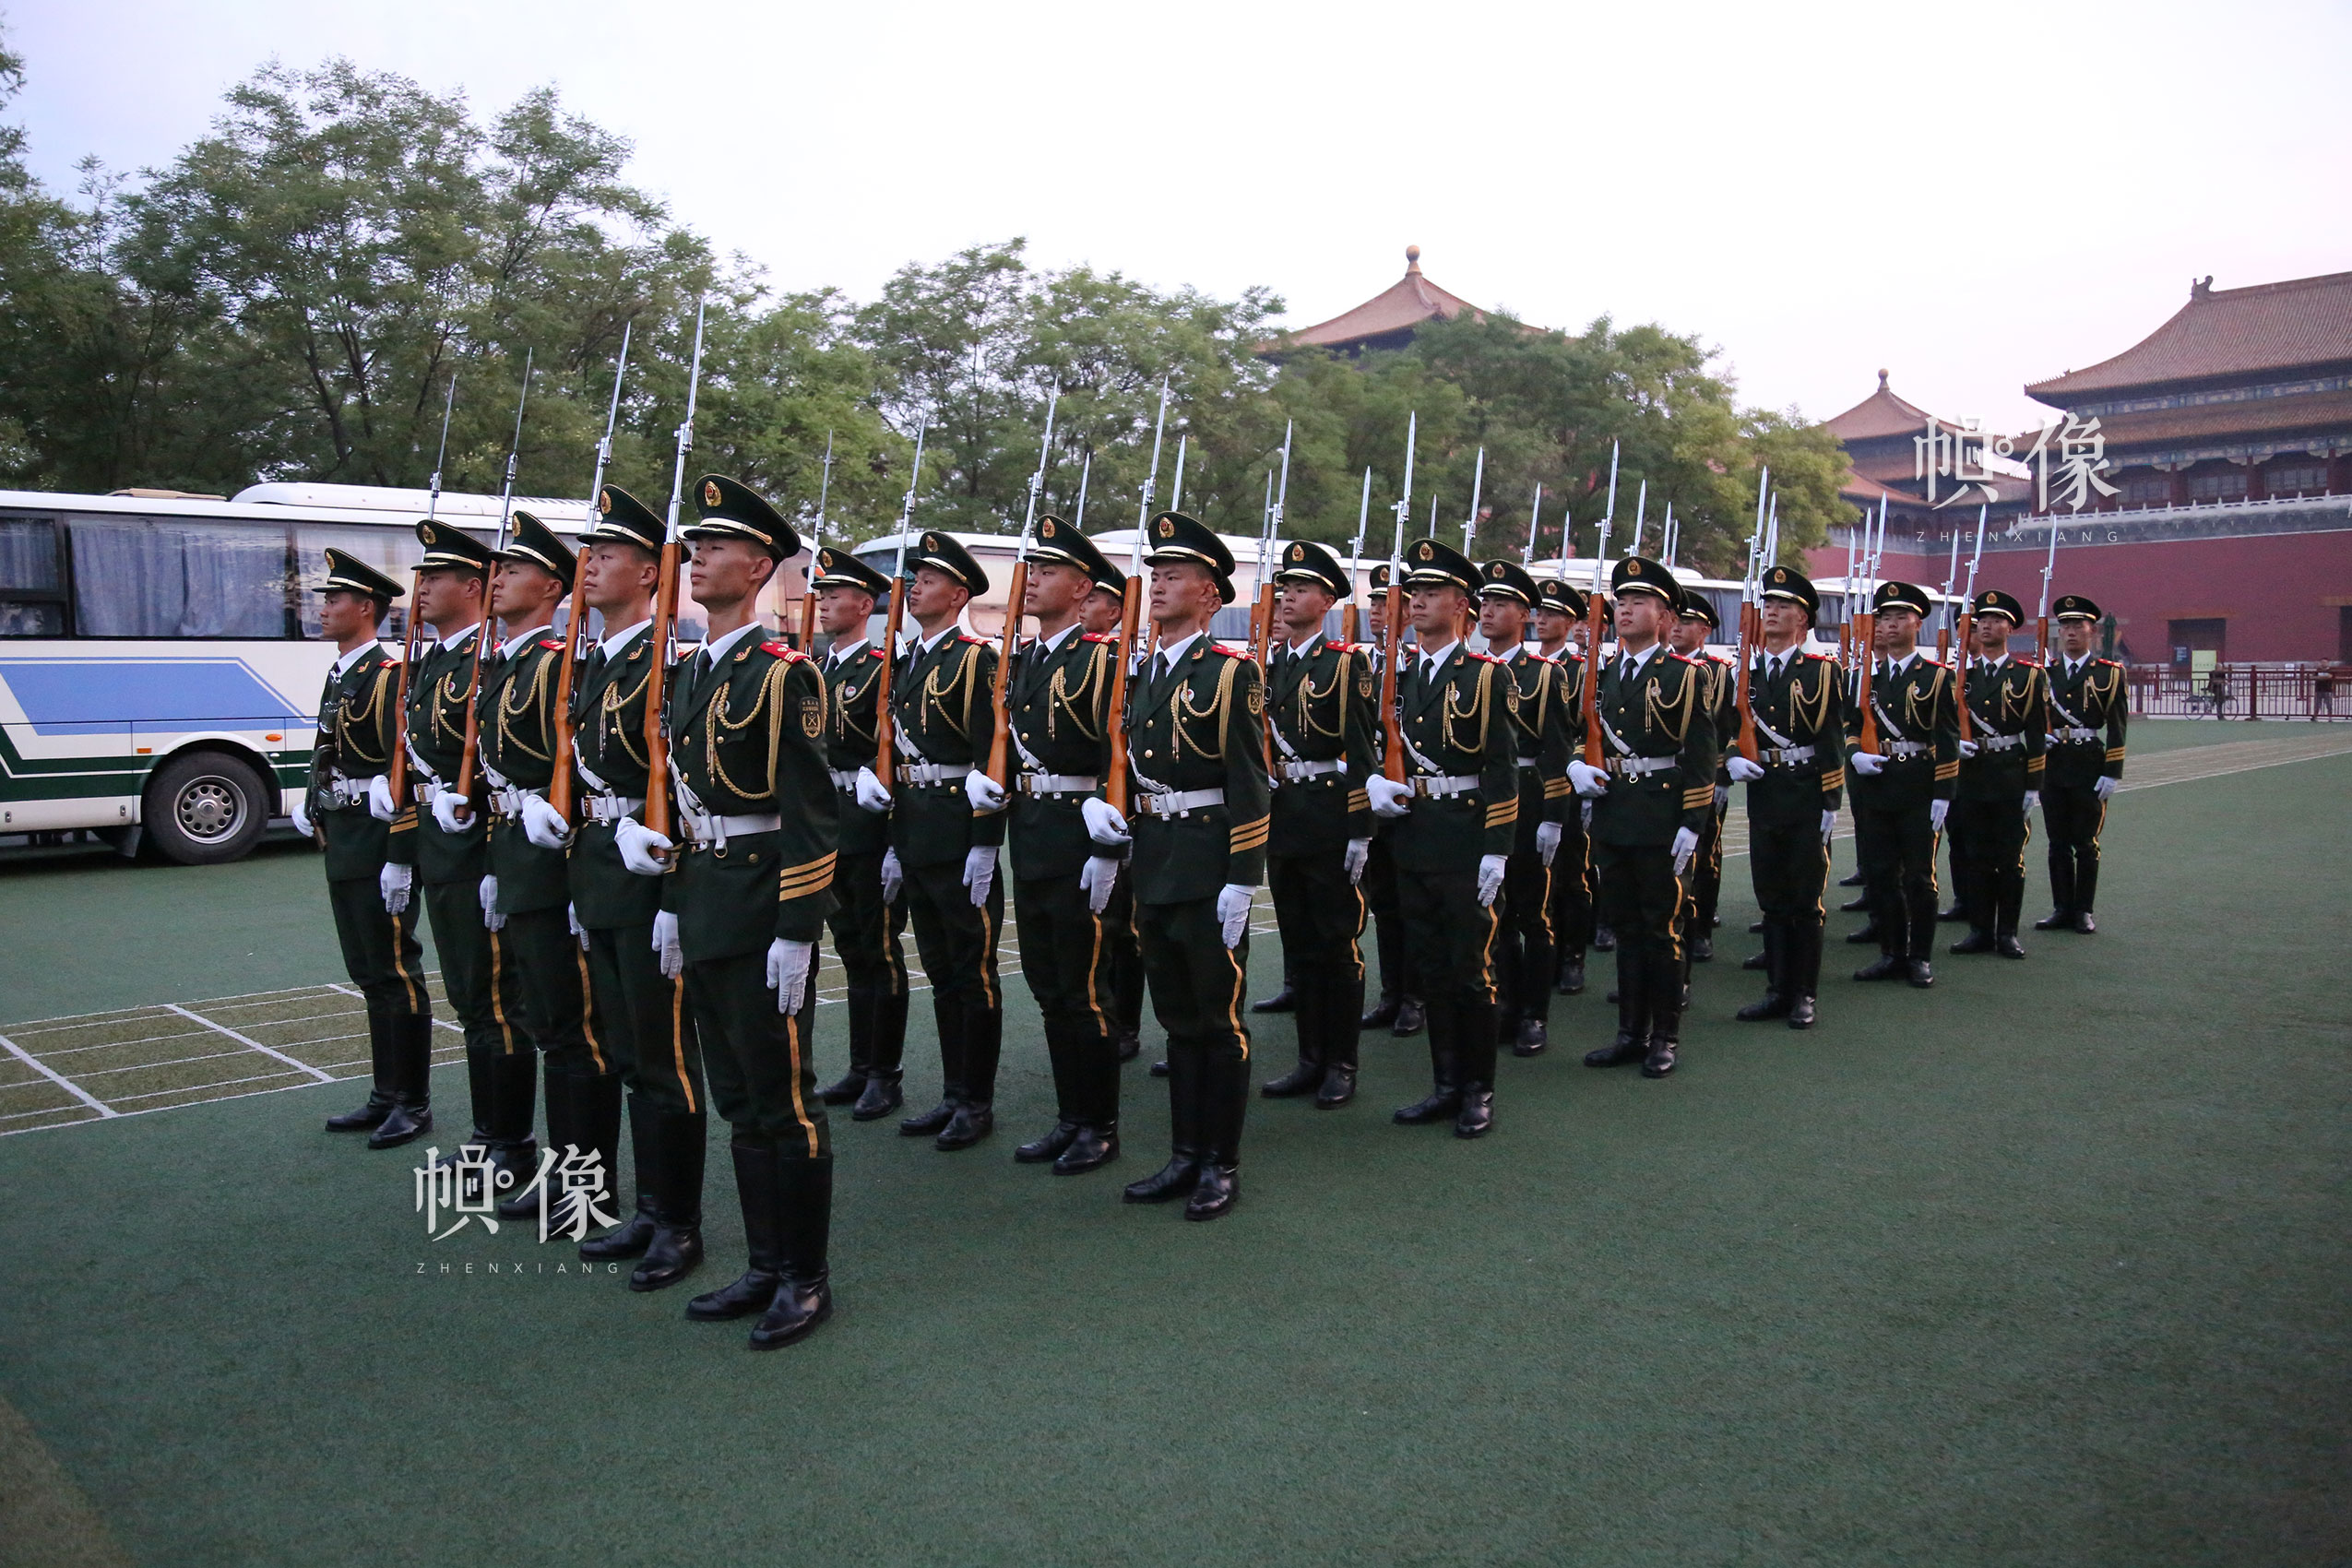 2017年7月28日,北京,国旗护卫队员进行操枪训练